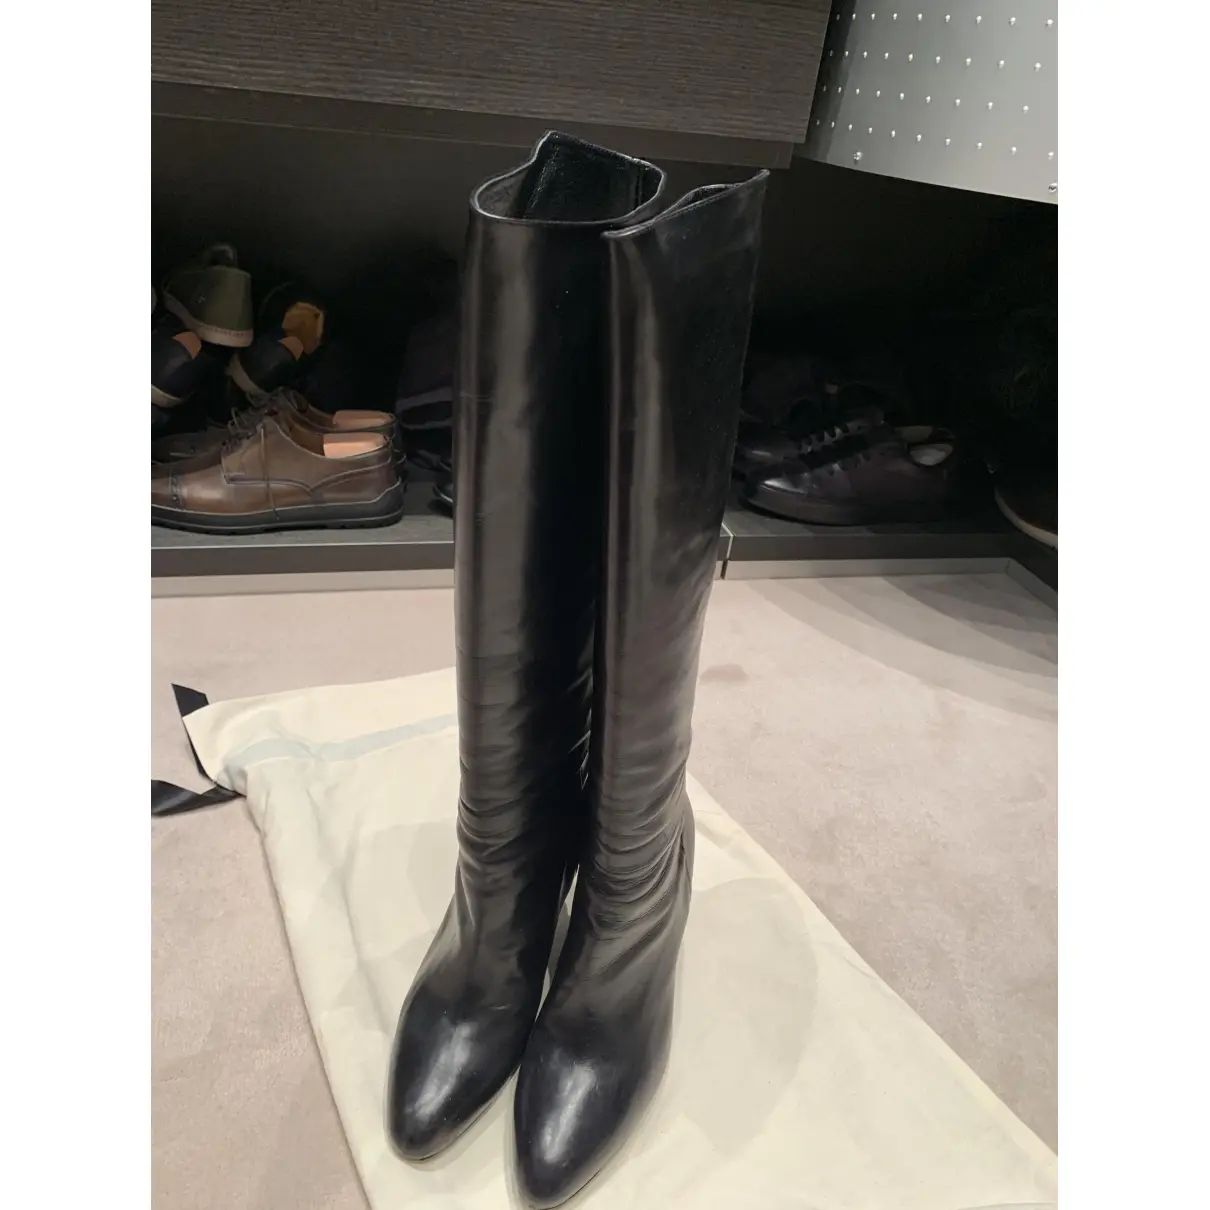 Buy Colisée De Sacha Leather boots online